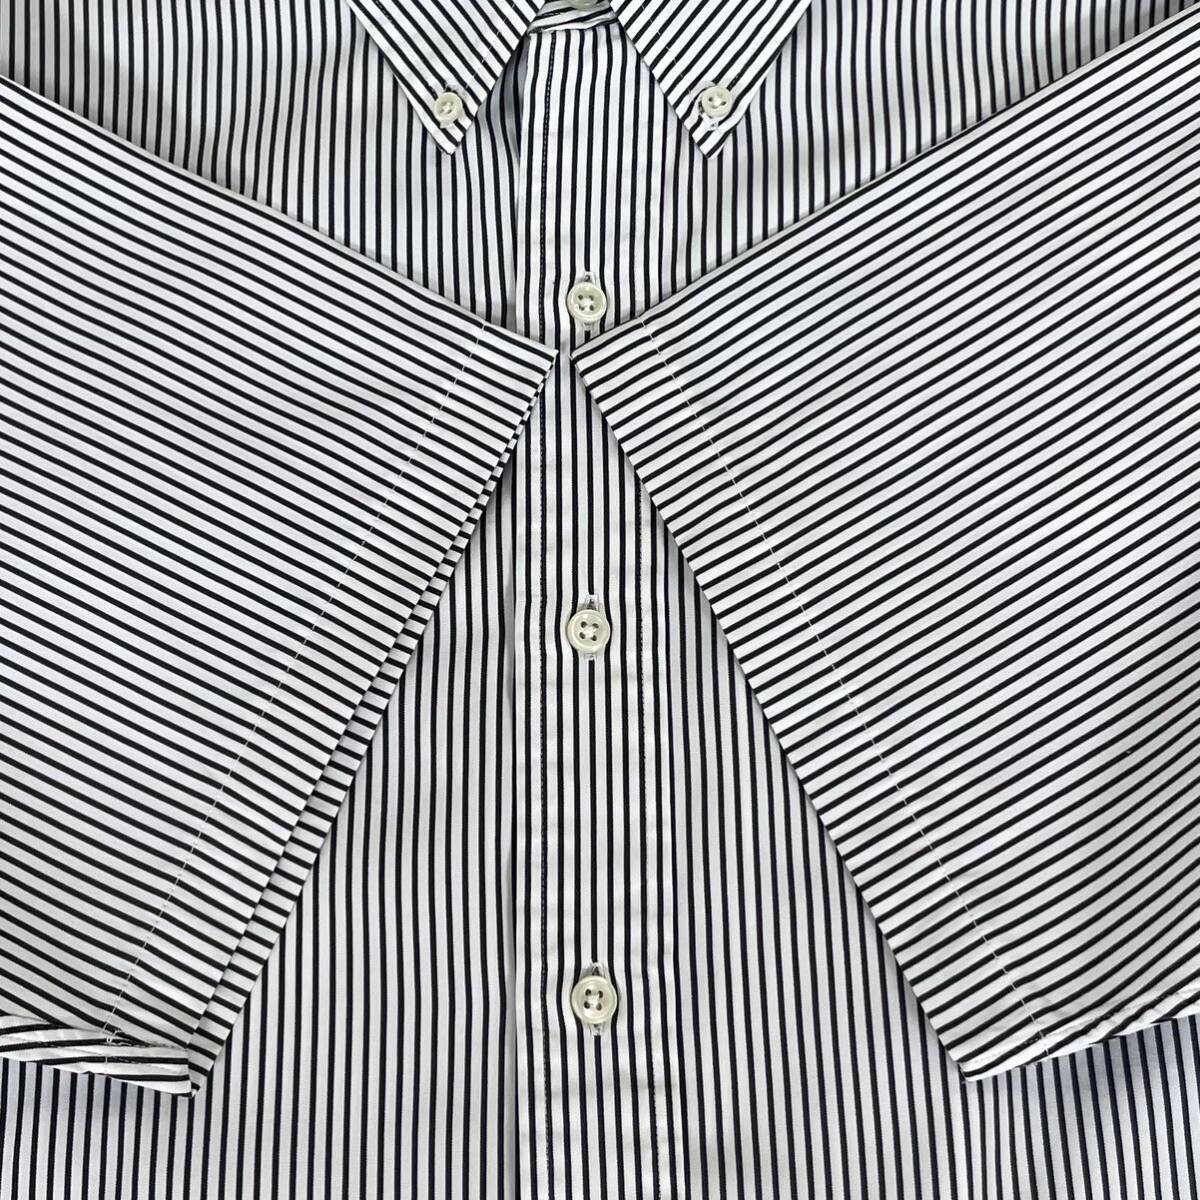 大人気デザイン☆ラルフローレン 刺繍ポニー 半袖 ボタンダウン ストライプシャツ BDシャツ ストライプ ブラック ホワイト L表記 90s 古着